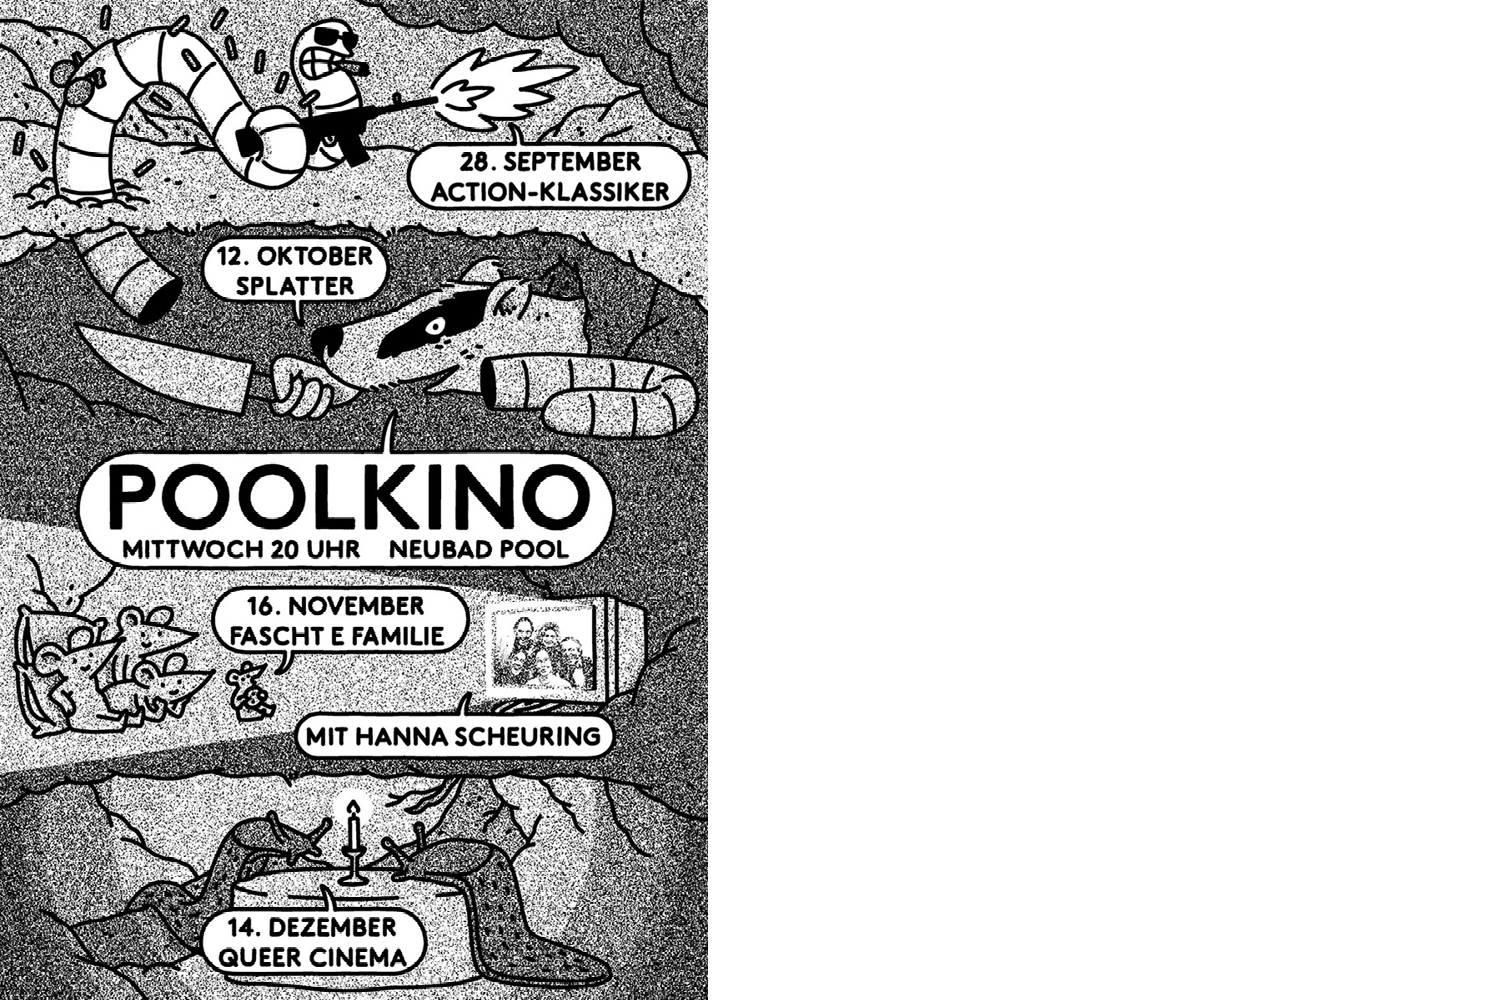 Plakat in schwarz-weiss für alle Poolkino-Veranstaltungen bis Ende 2022.